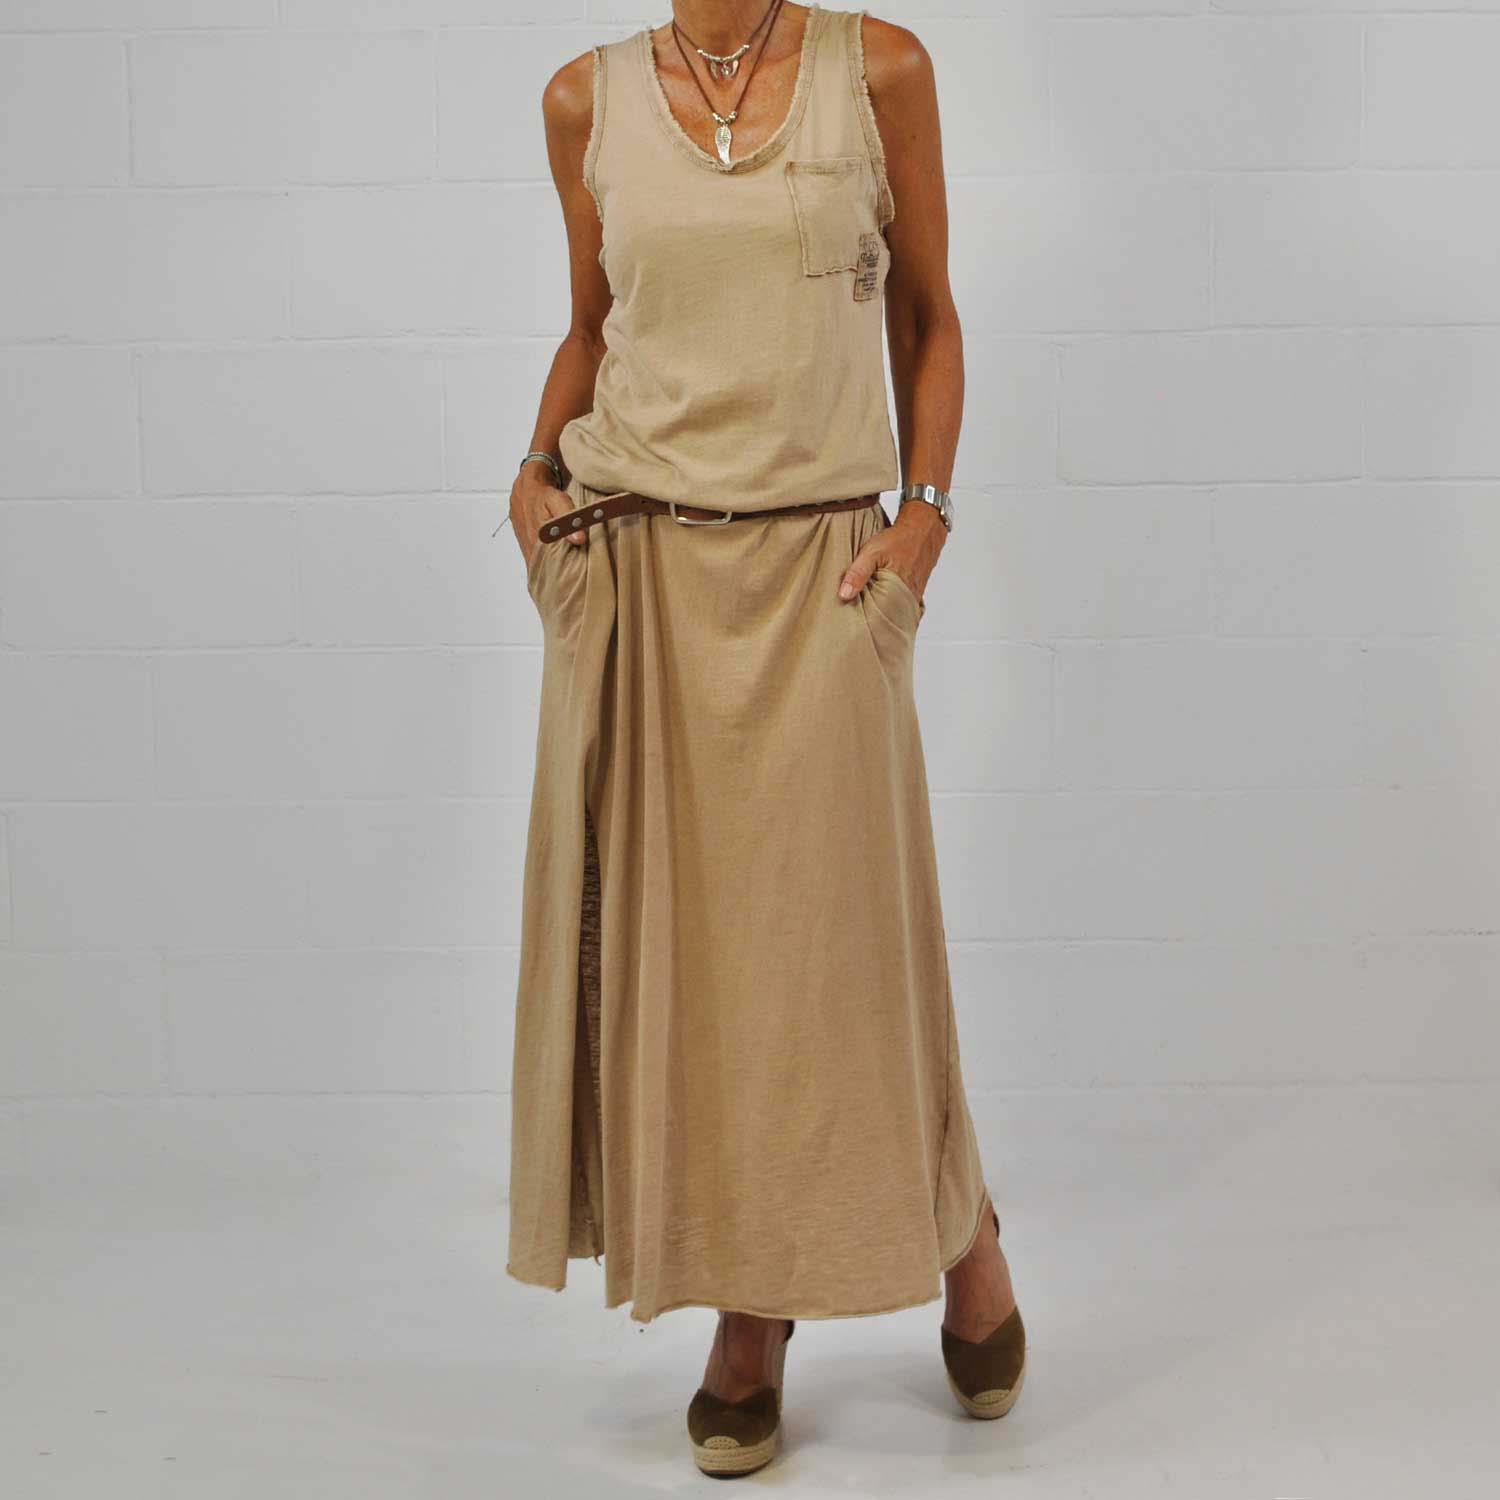 Brown pocket dress